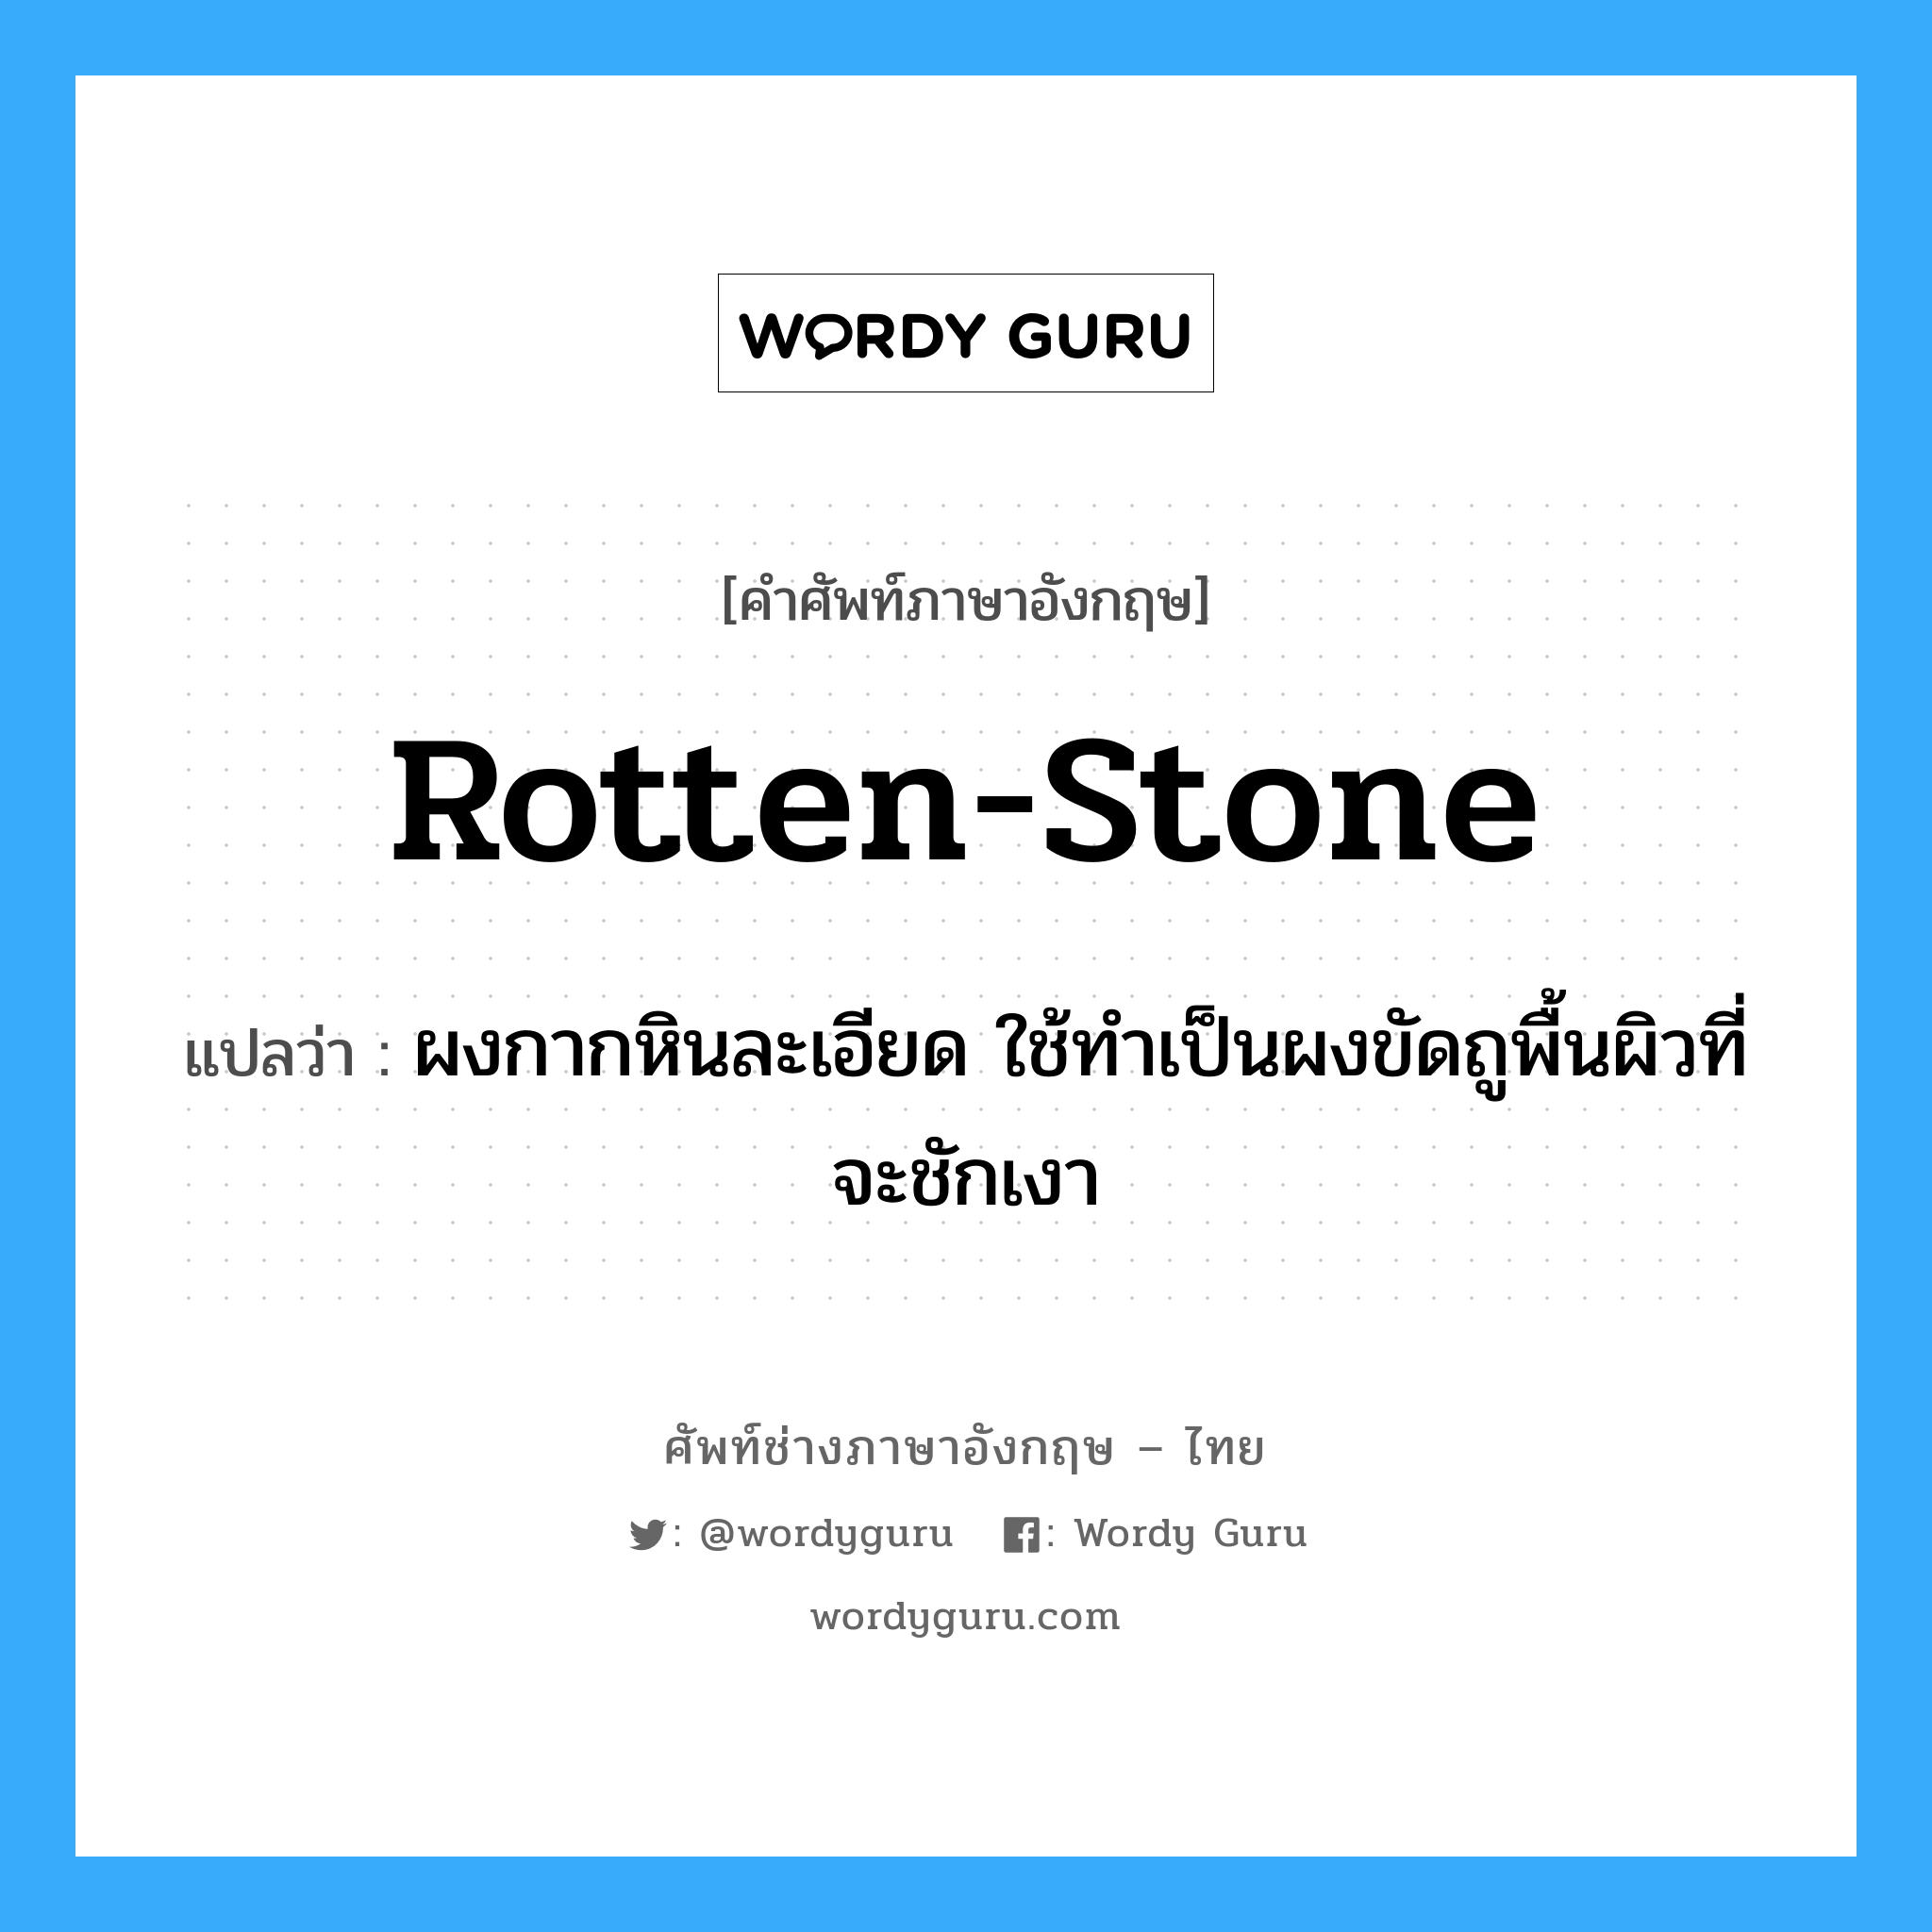 rotten-stone แปลว่า?, คำศัพท์ช่างภาษาอังกฤษ - ไทย rotten-stone คำศัพท์ภาษาอังกฤษ rotten-stone แปลว่า ผงกากหินละเอียด ใช้ทำเป็นผงขัดถูพื้นผิวที่จะชักเงา